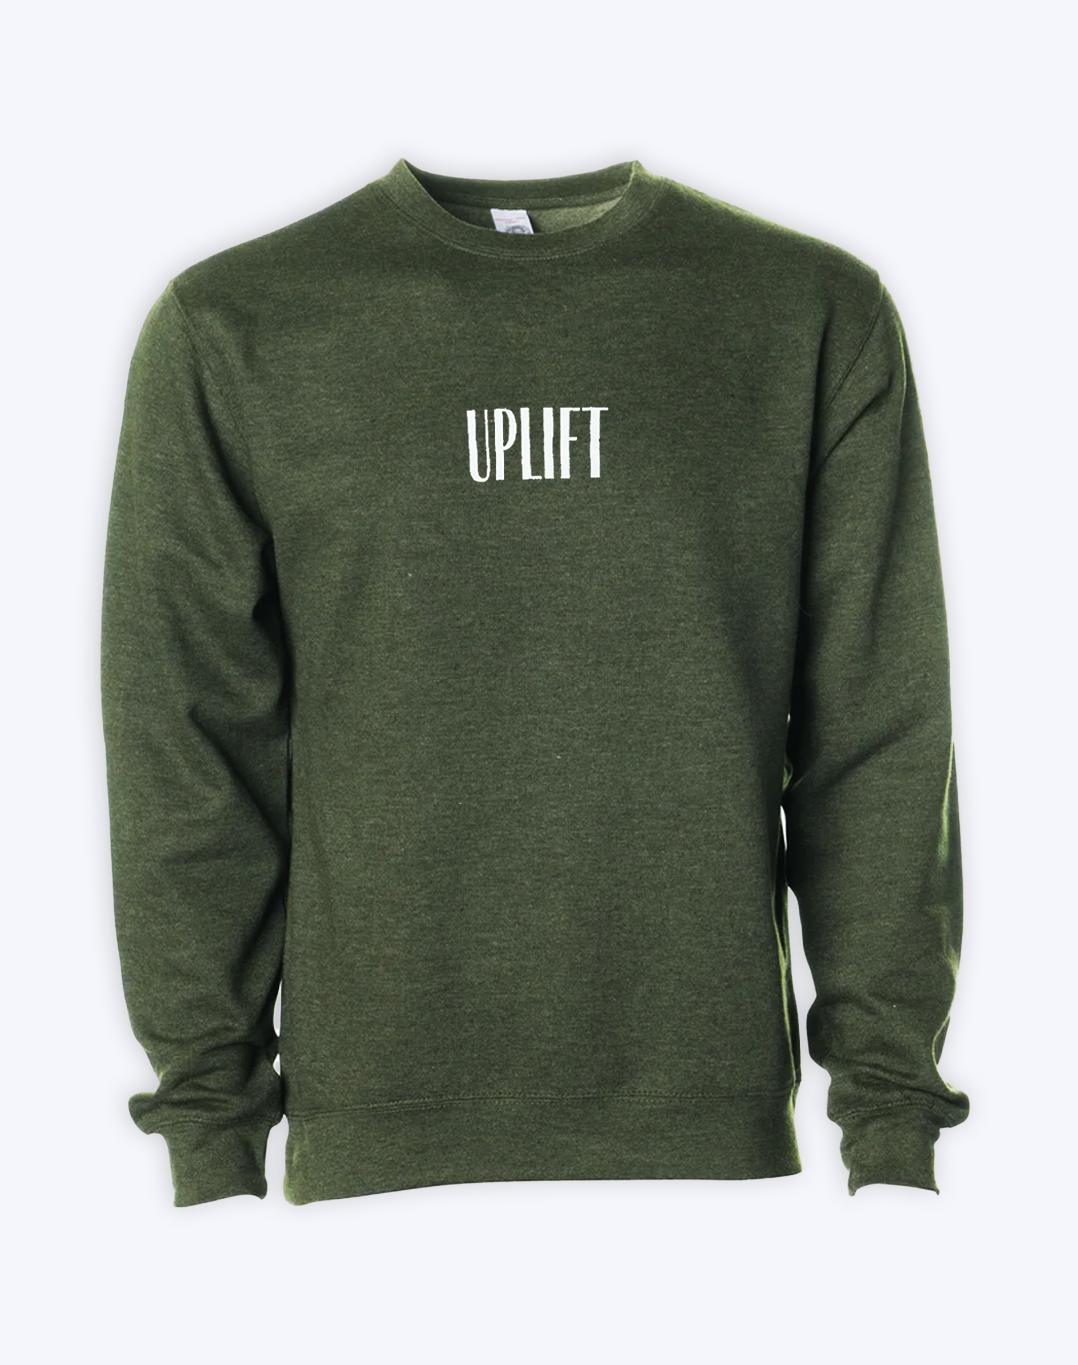 Uplift Fleece Sweatshirt